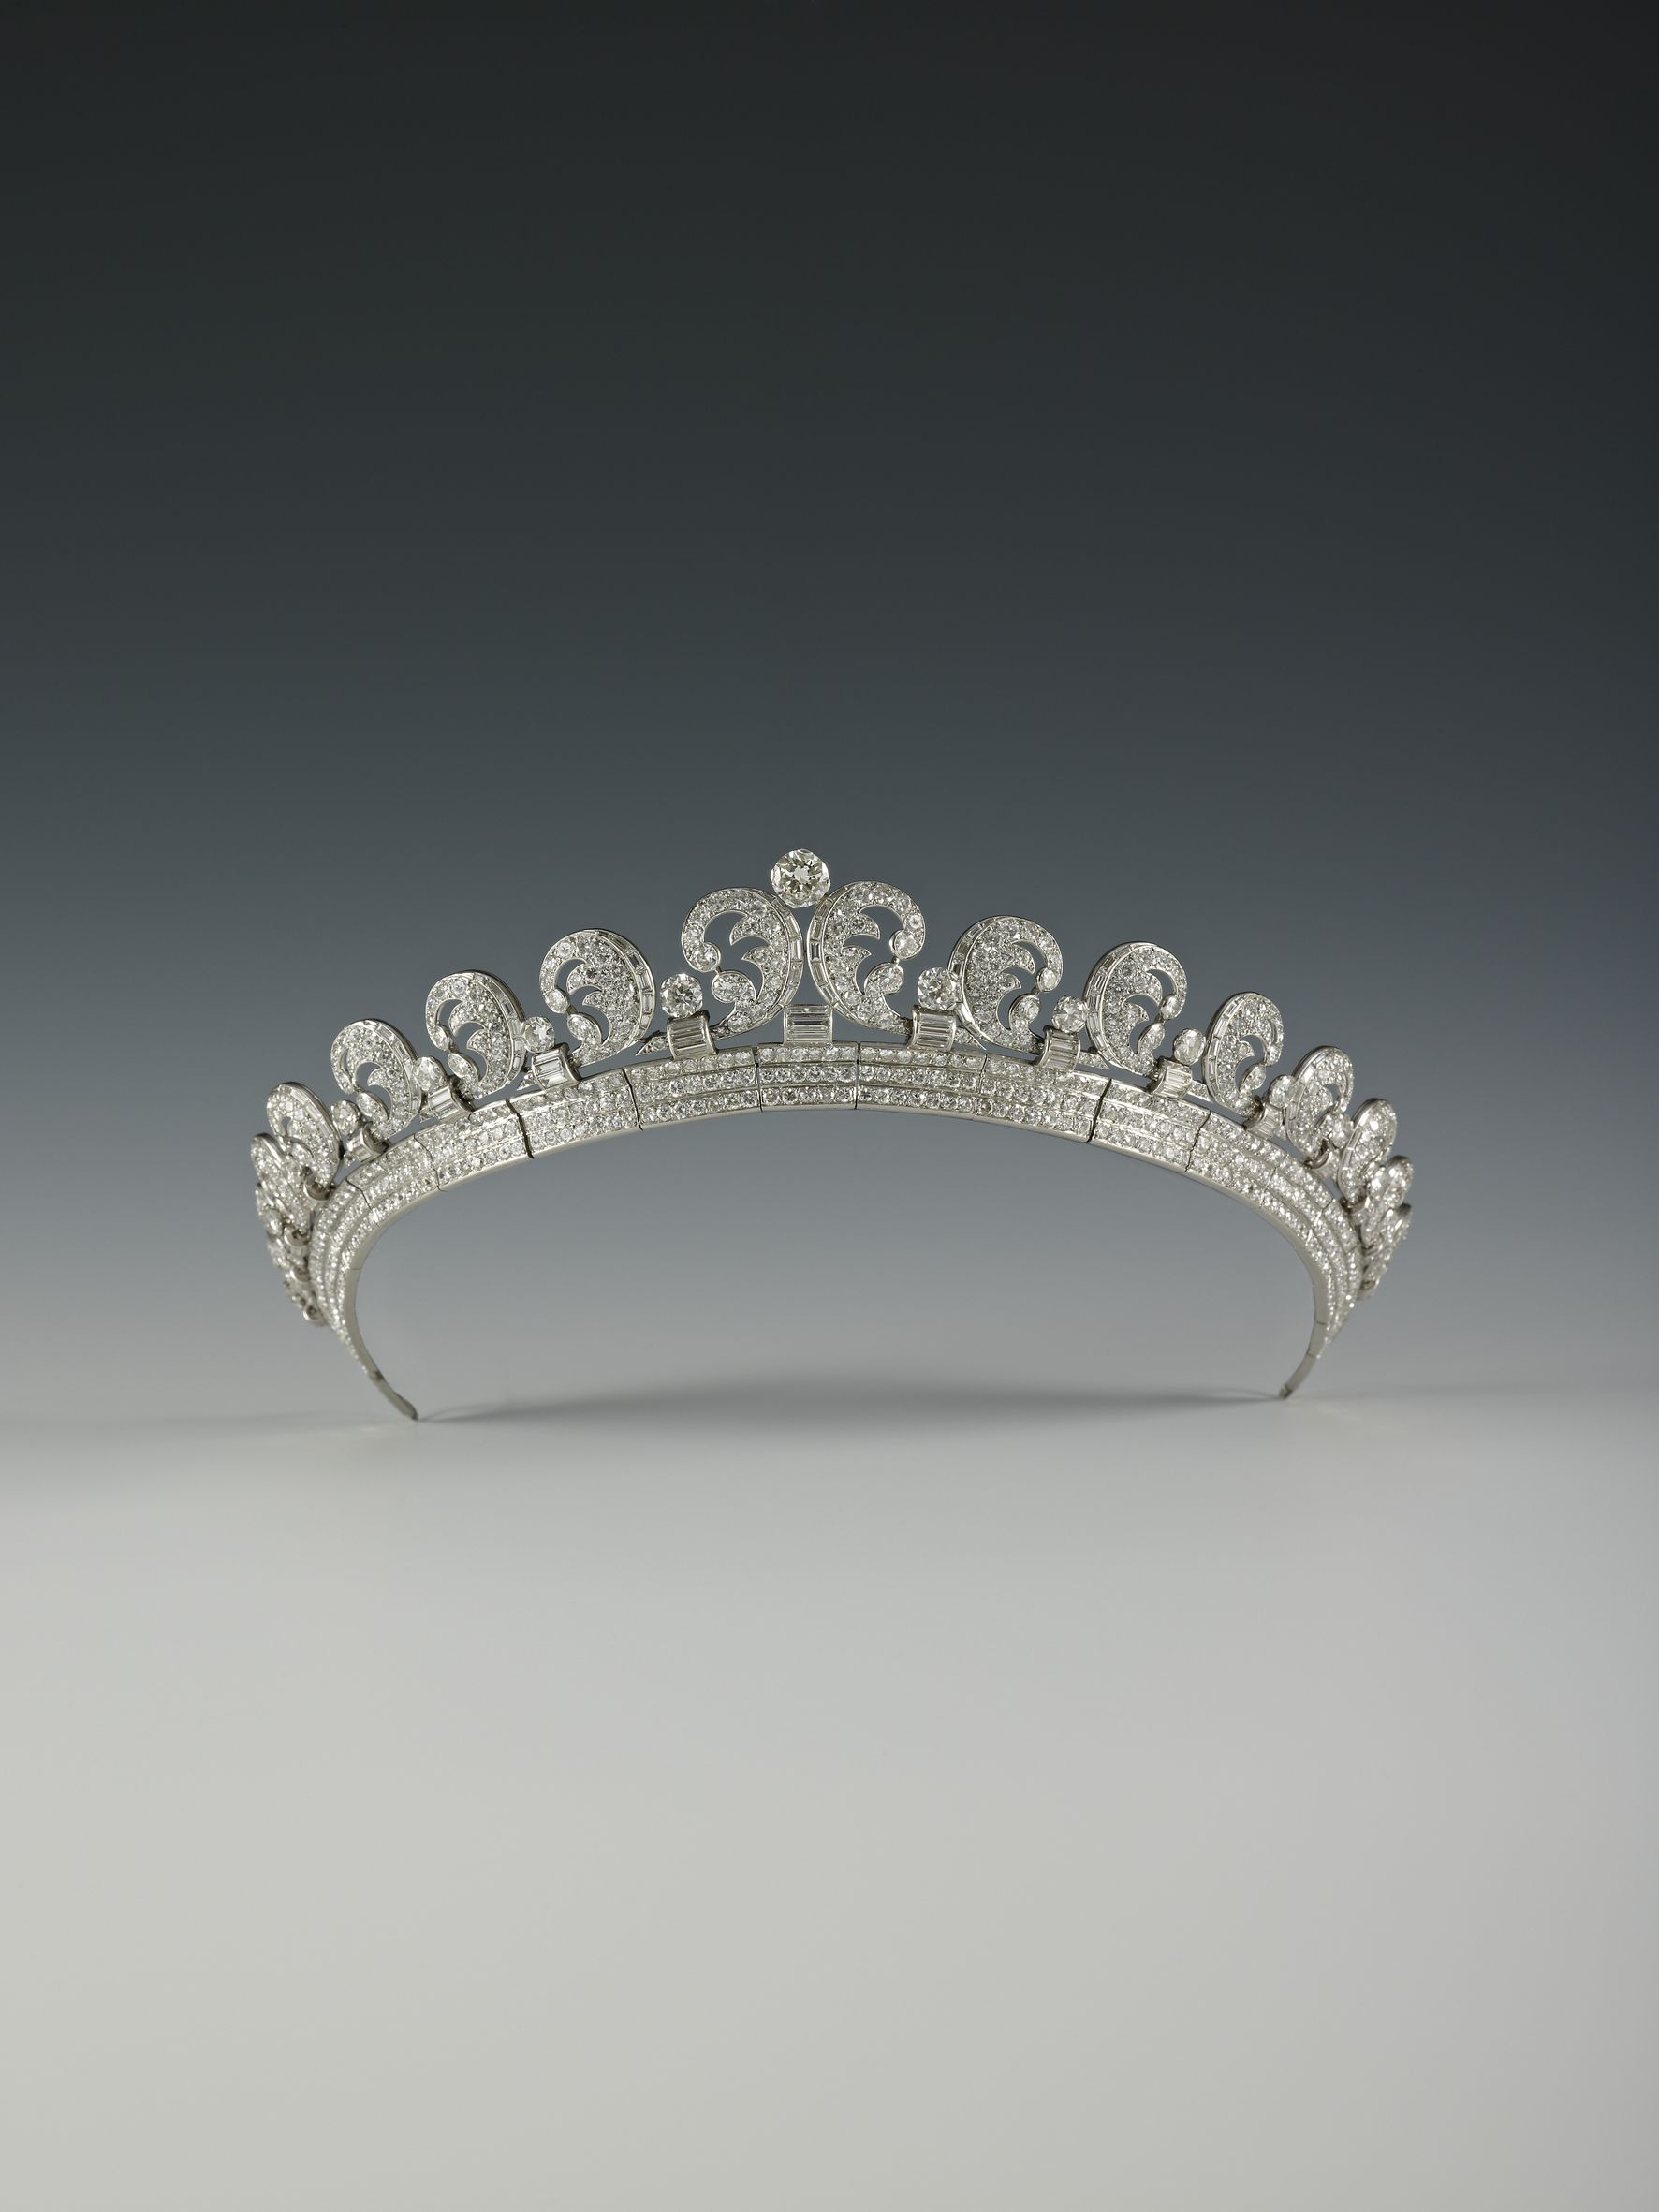 Queen Elizabeth's Halo Tiara